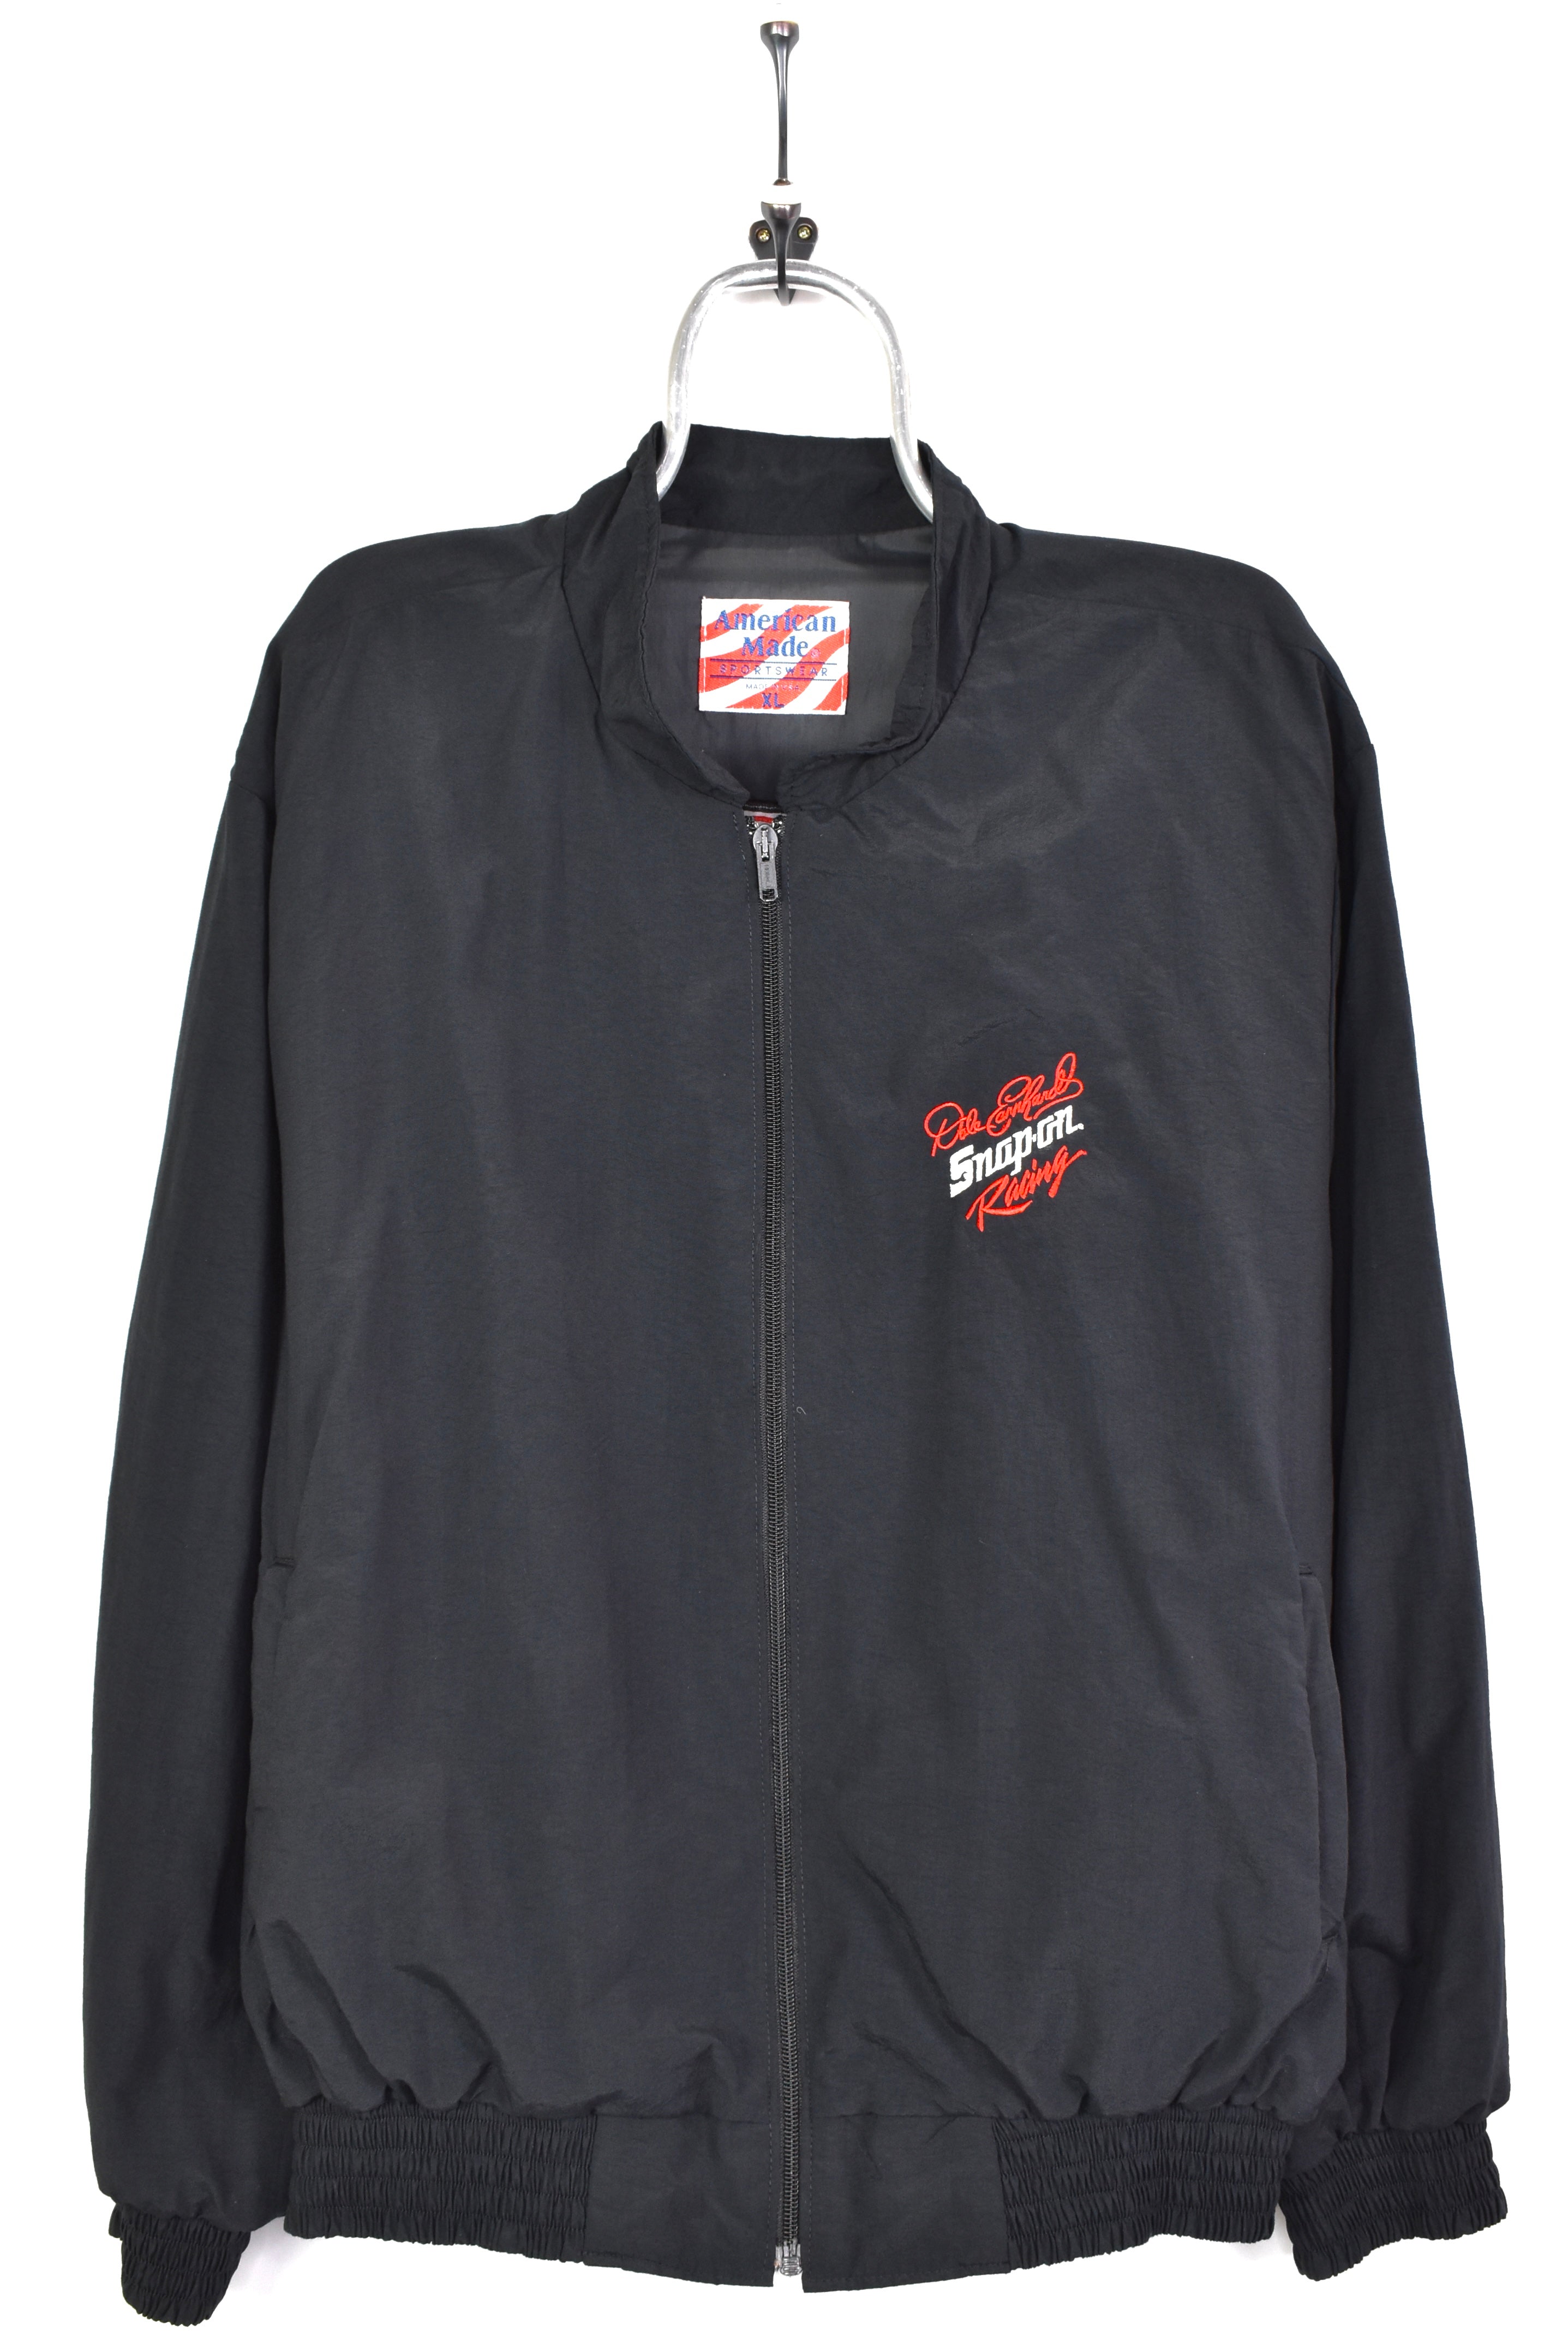 Vintage nascar embroidered black jacket | xl NASCAR / RACING